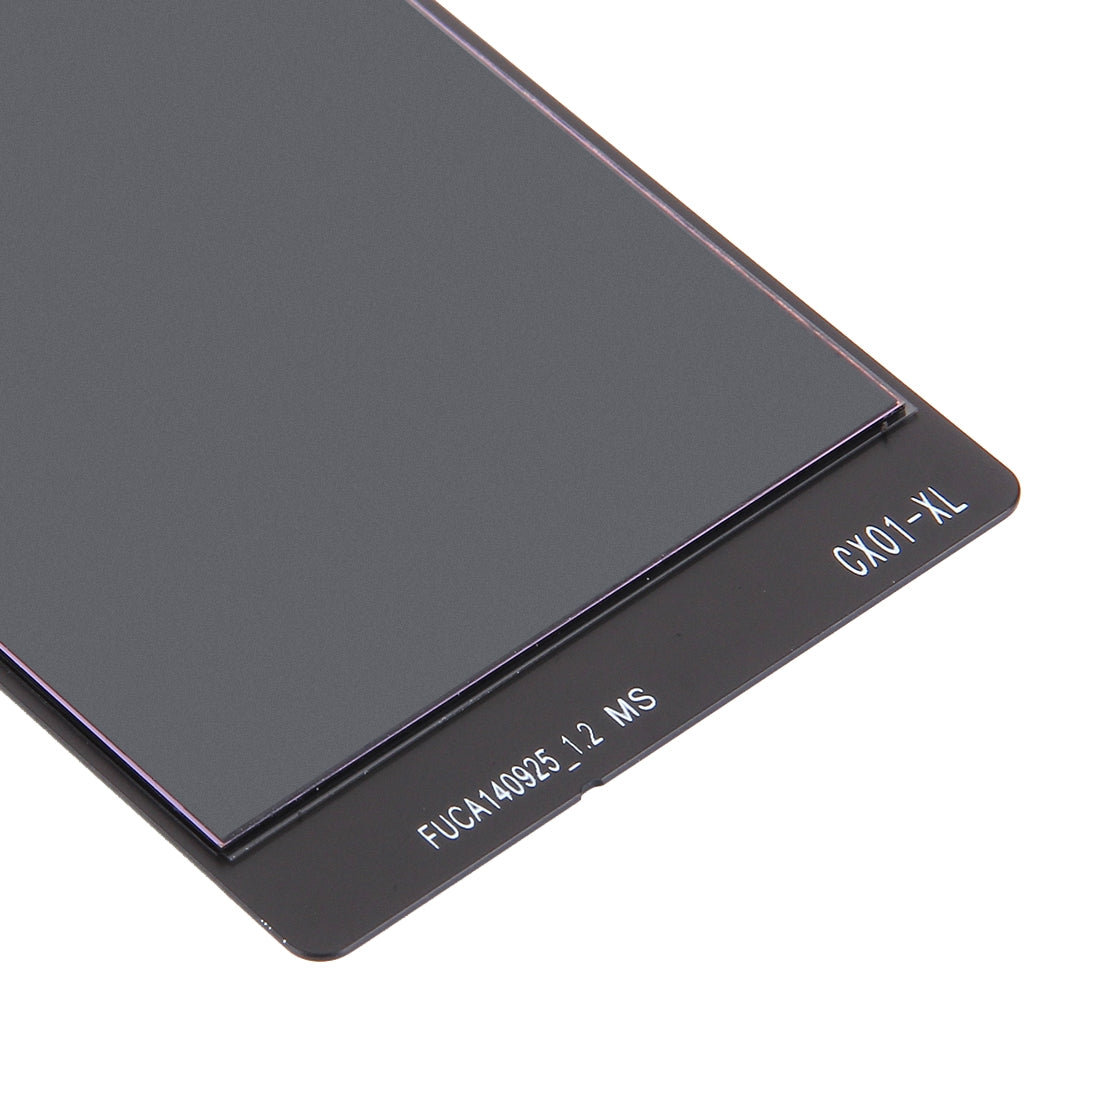 Pantalla LCD + Tactil Digitalizador Nokia Lumia 730 Negro